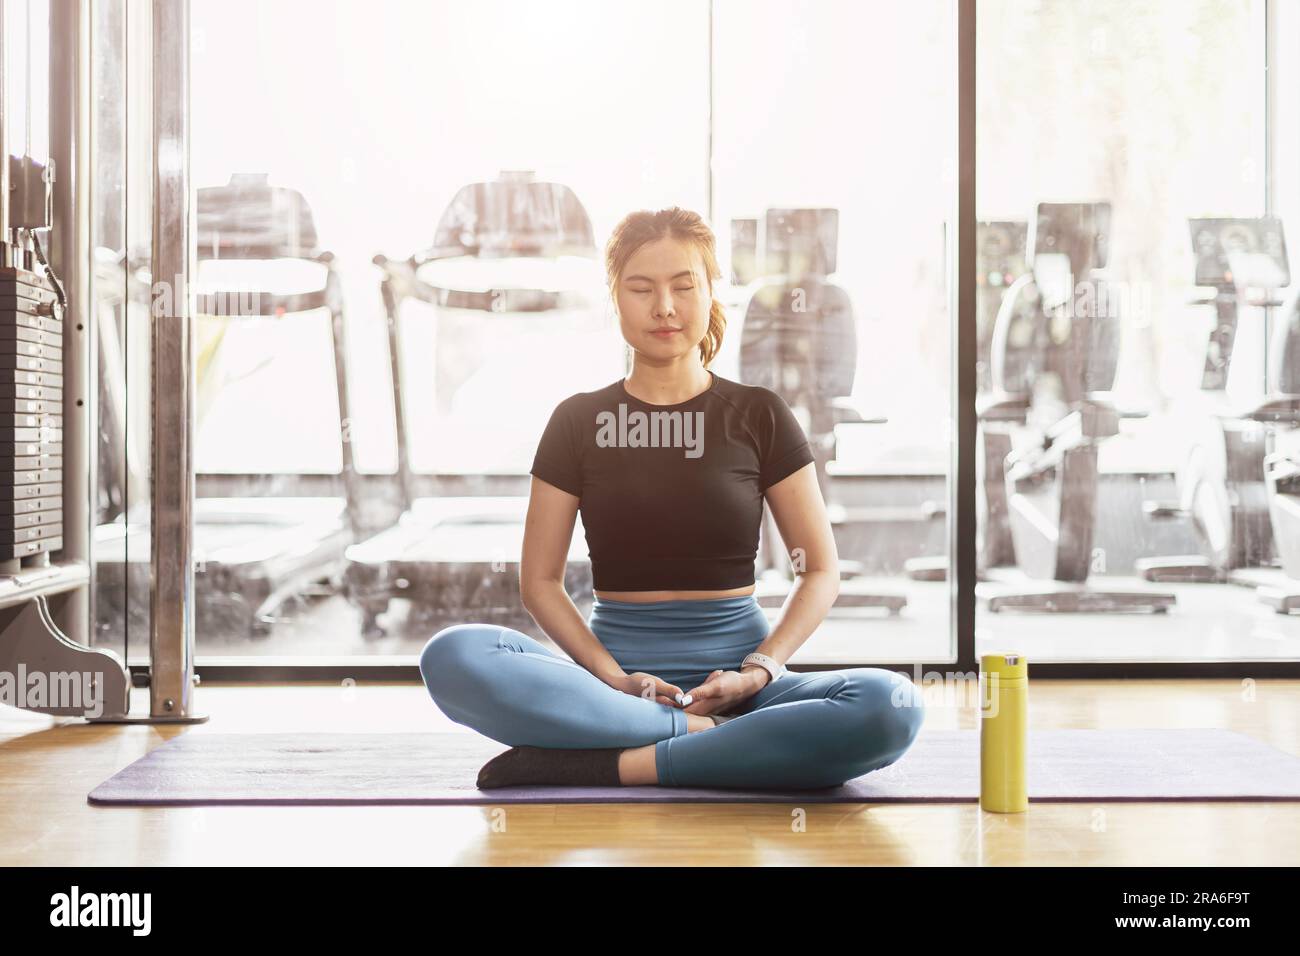 Junge asiatische Frau, die Yoga praktiziert, sitzt in Meditationsübungen, Ruhe, Ruhe, Entspannung, posieren, trainieren in Sportbekleidung, Meditationssitzung im Hallensport Stockfoto